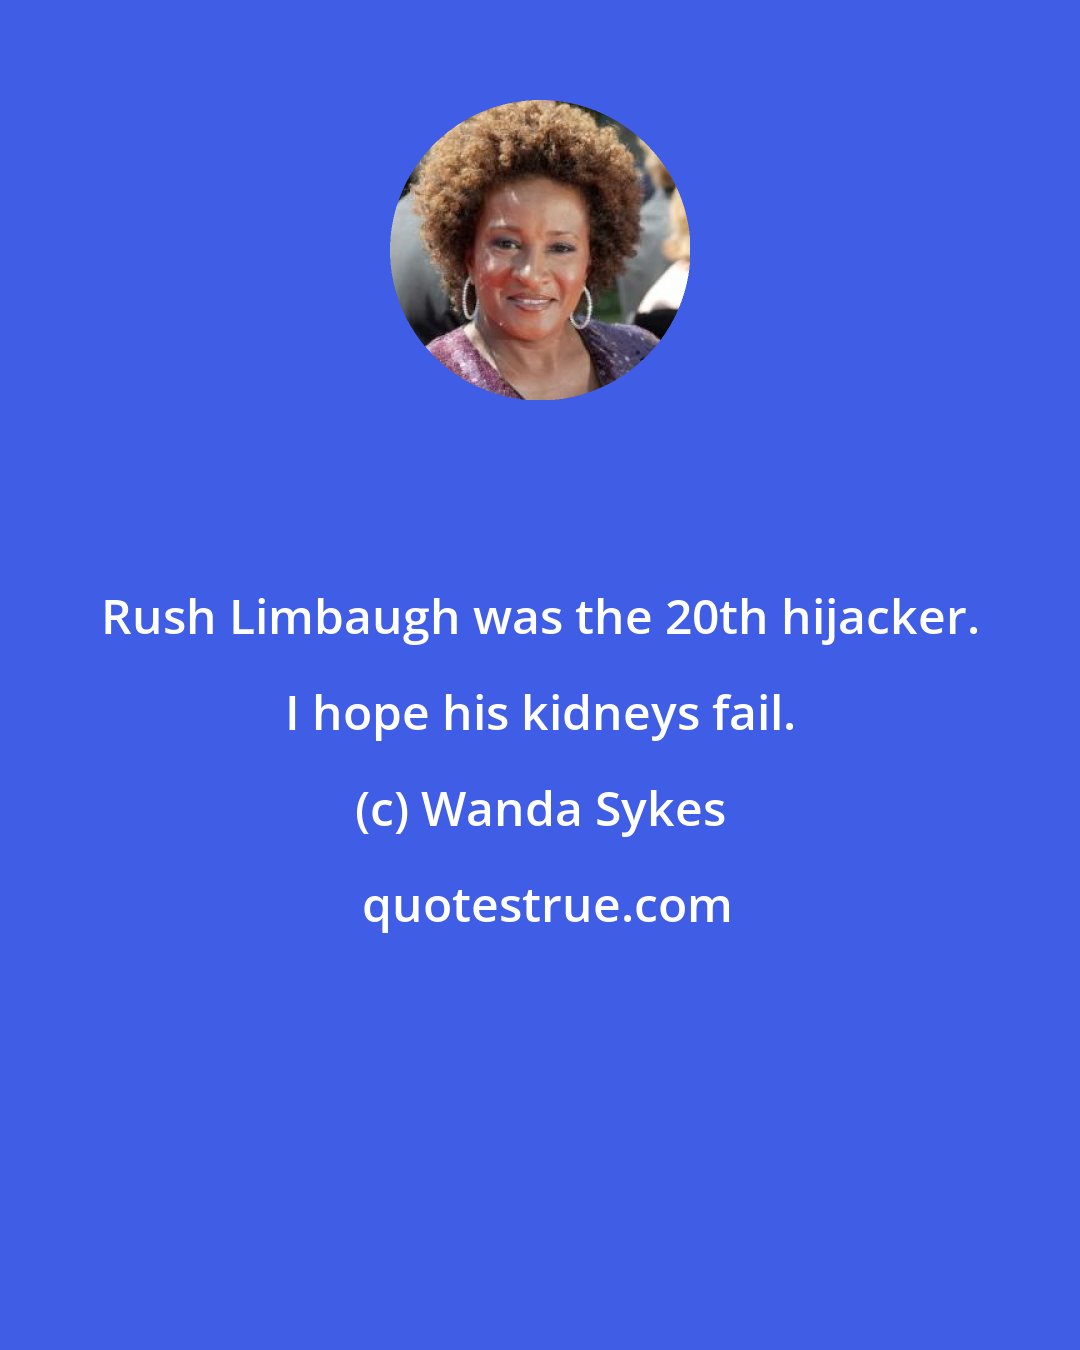 Wanda Sykes: Rush Limbaugh was the 20th hijacker. I hope his kidneys fail.